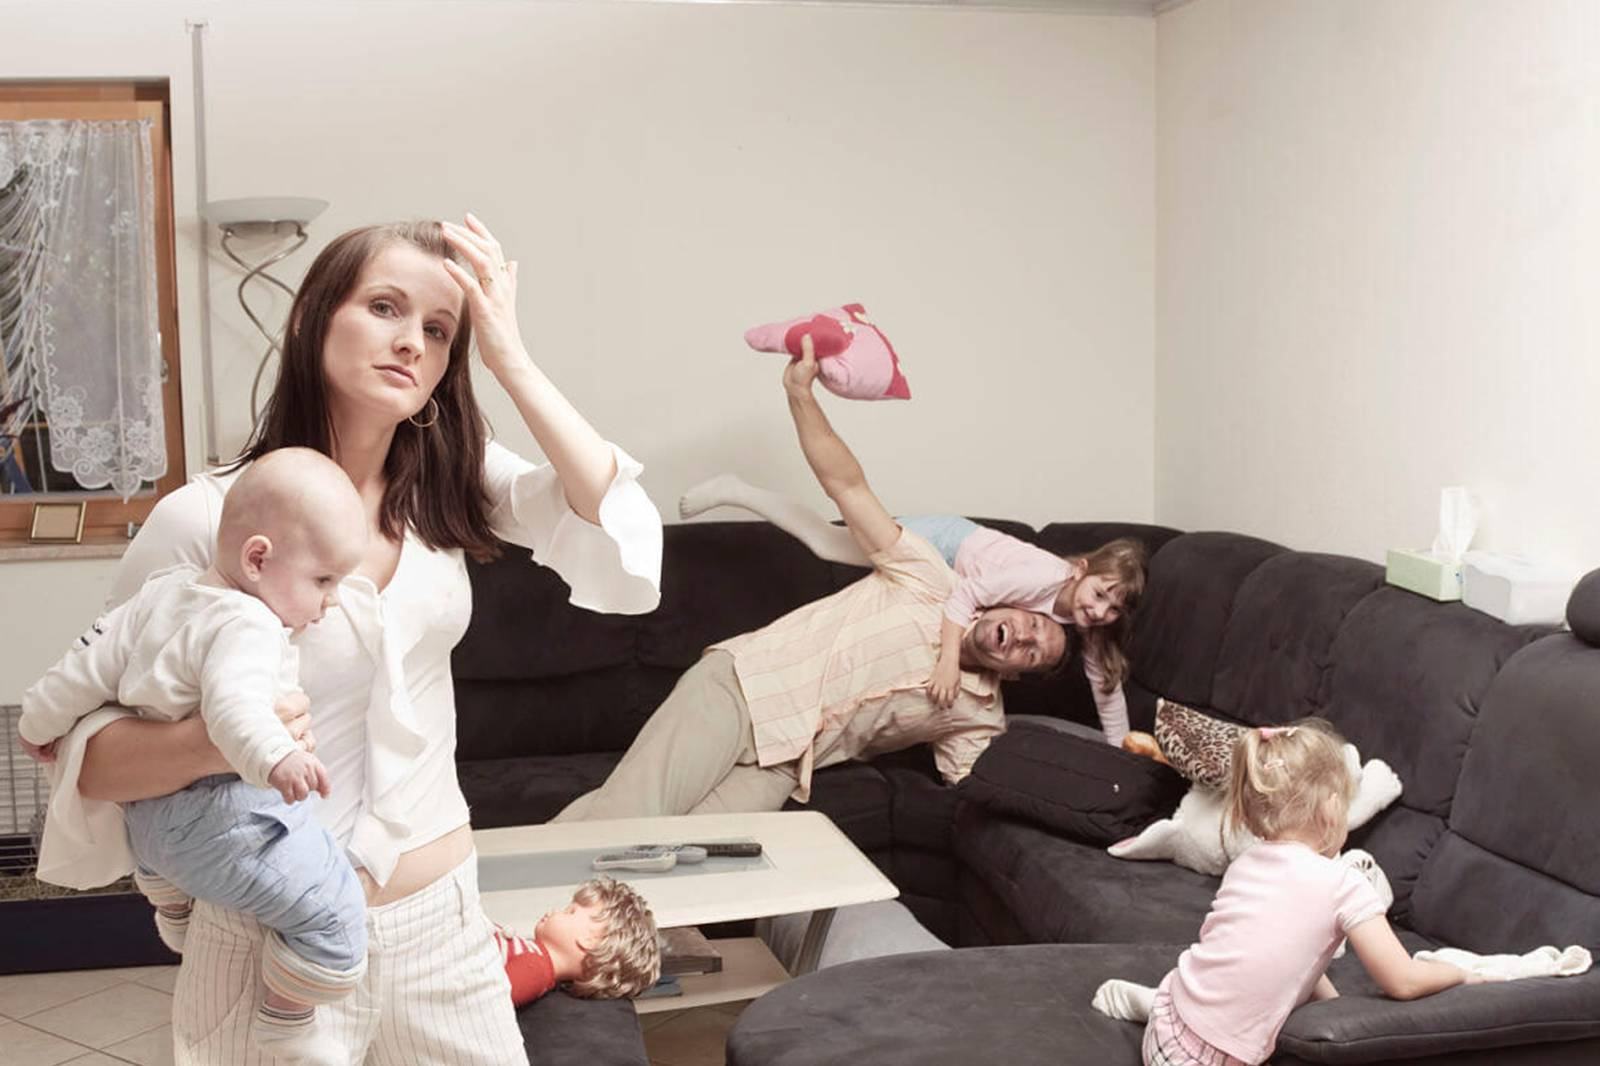 Studiu: Care sunt cele mai stresate mame. Raspunsul te va surprinde